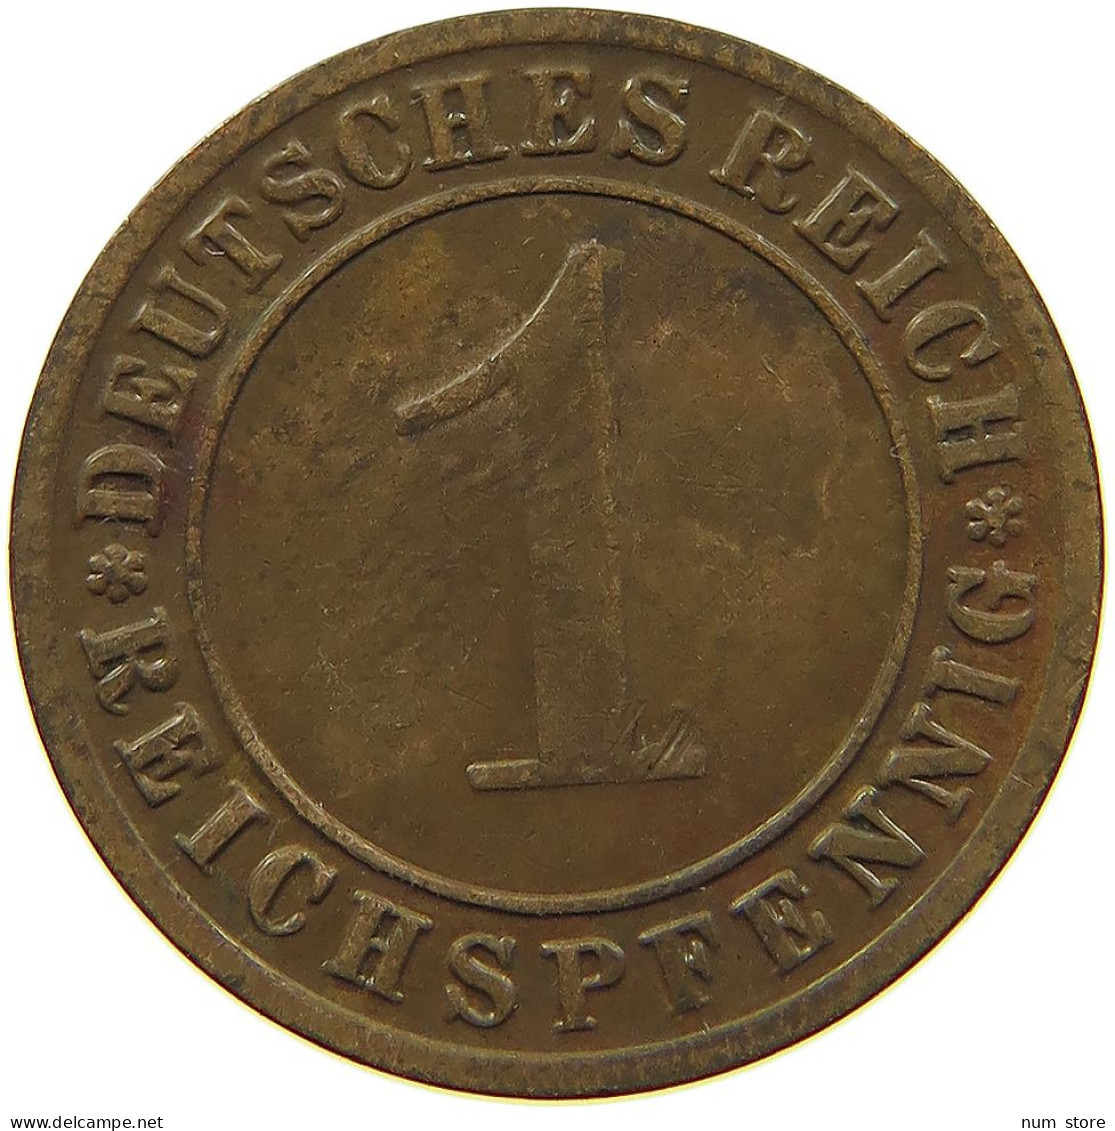 WEIMARER REPUBLIK REICHSPFENNIG 1930 G  #MA 100171 - 1 Renten- & 1 Reichspfennig